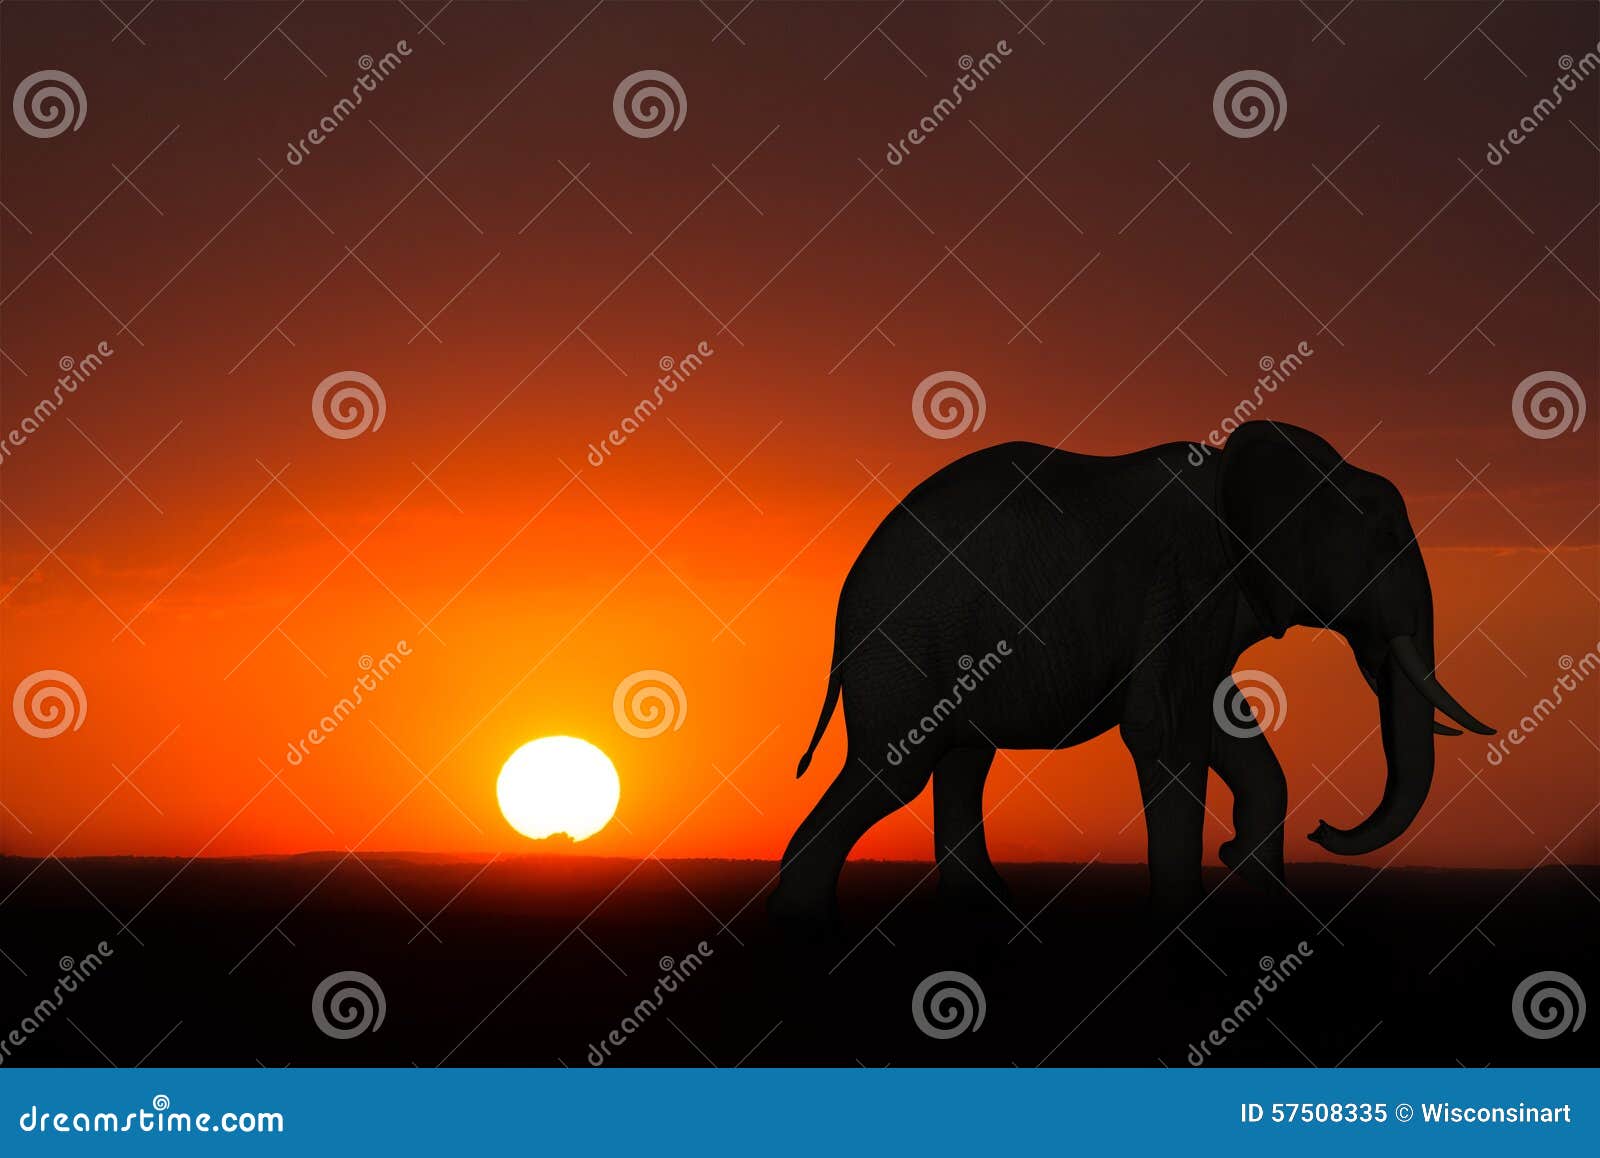 africa elephant sunrise sunset wildlife